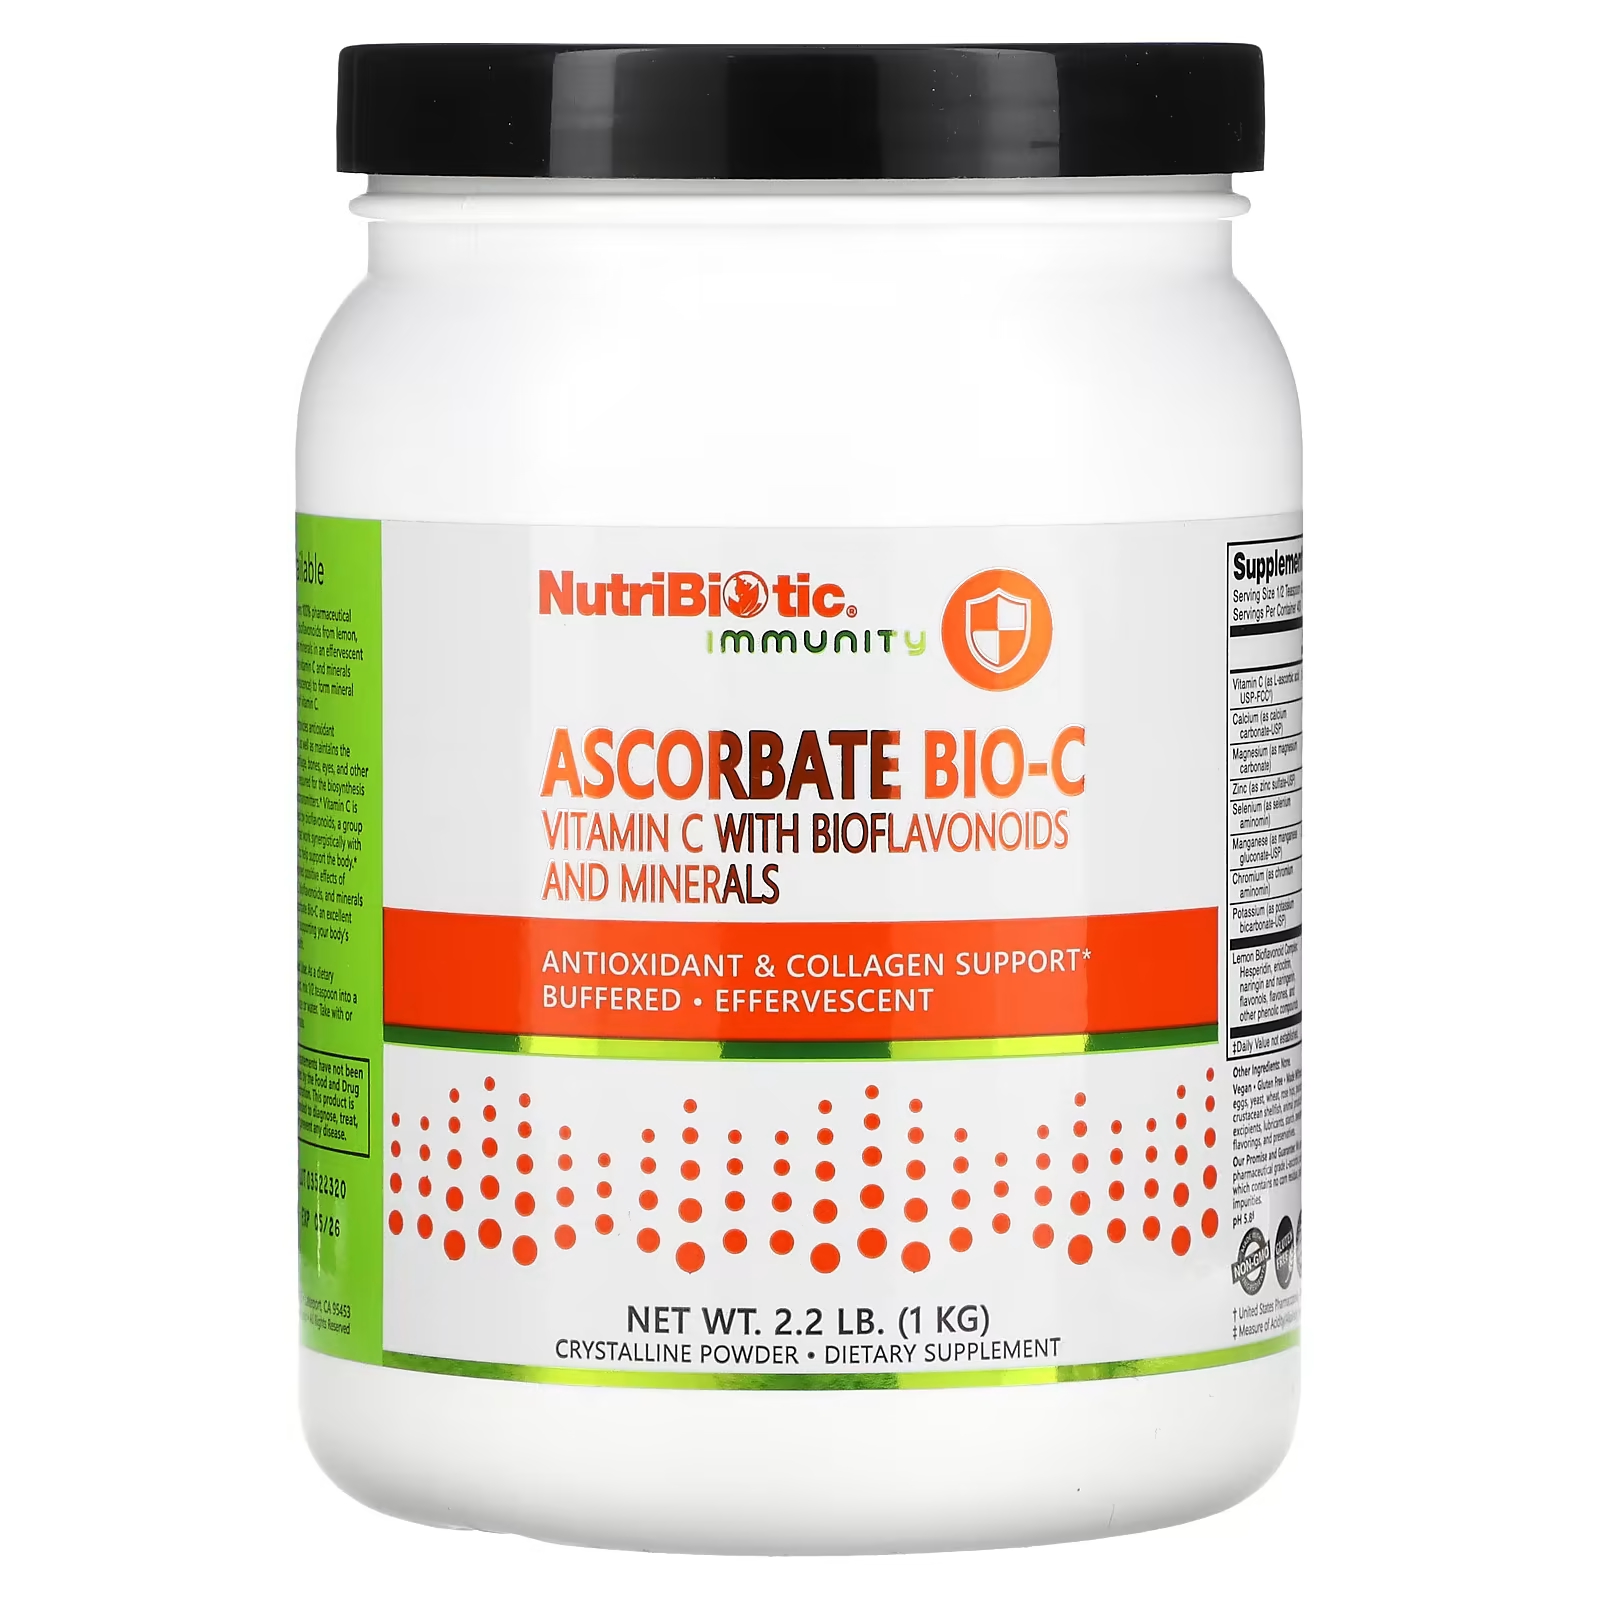 NutriBiotic Immunity Ascorbate Bio-C Витамин C с биофлавоноидами и минералами 2,2 фунта (1 кг) nutribiotic immunity hypo aller c витамин c с кальцием магнием калием и цинком 1 кг 2 2 фунта